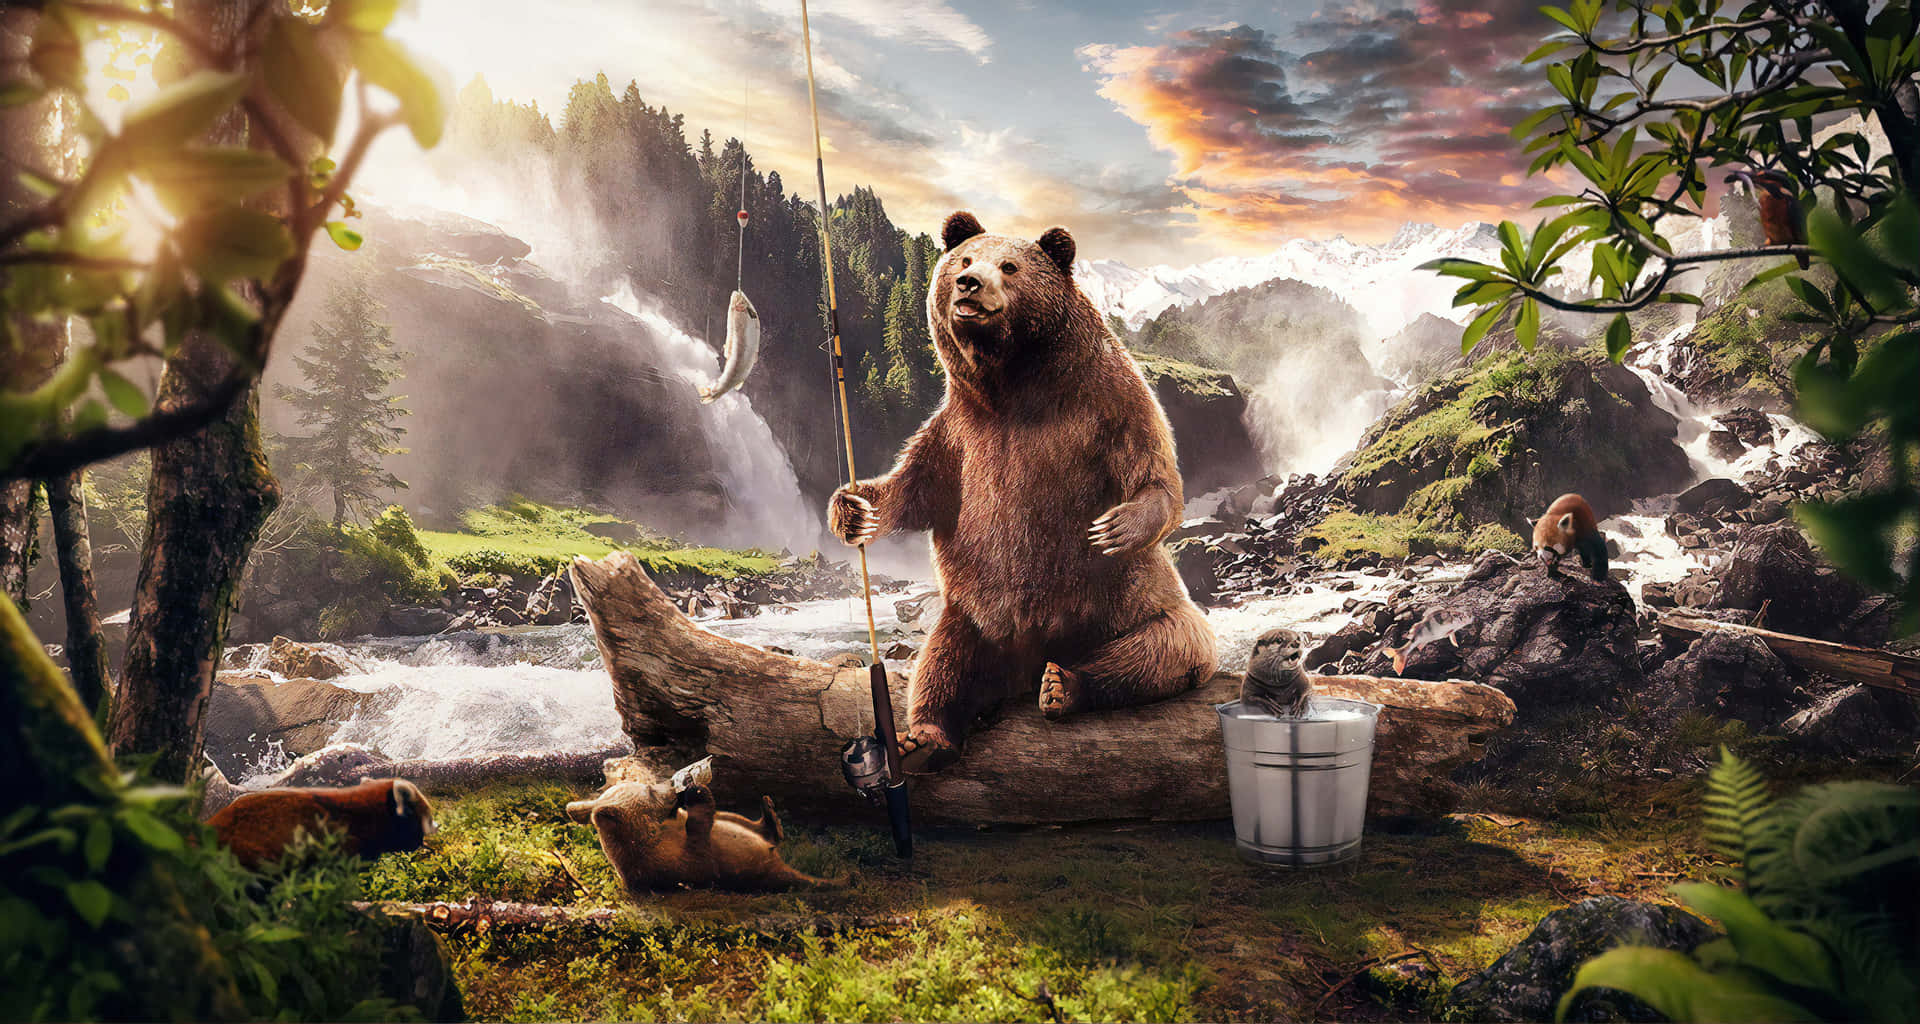 Immagini Dell'orso Kodiak